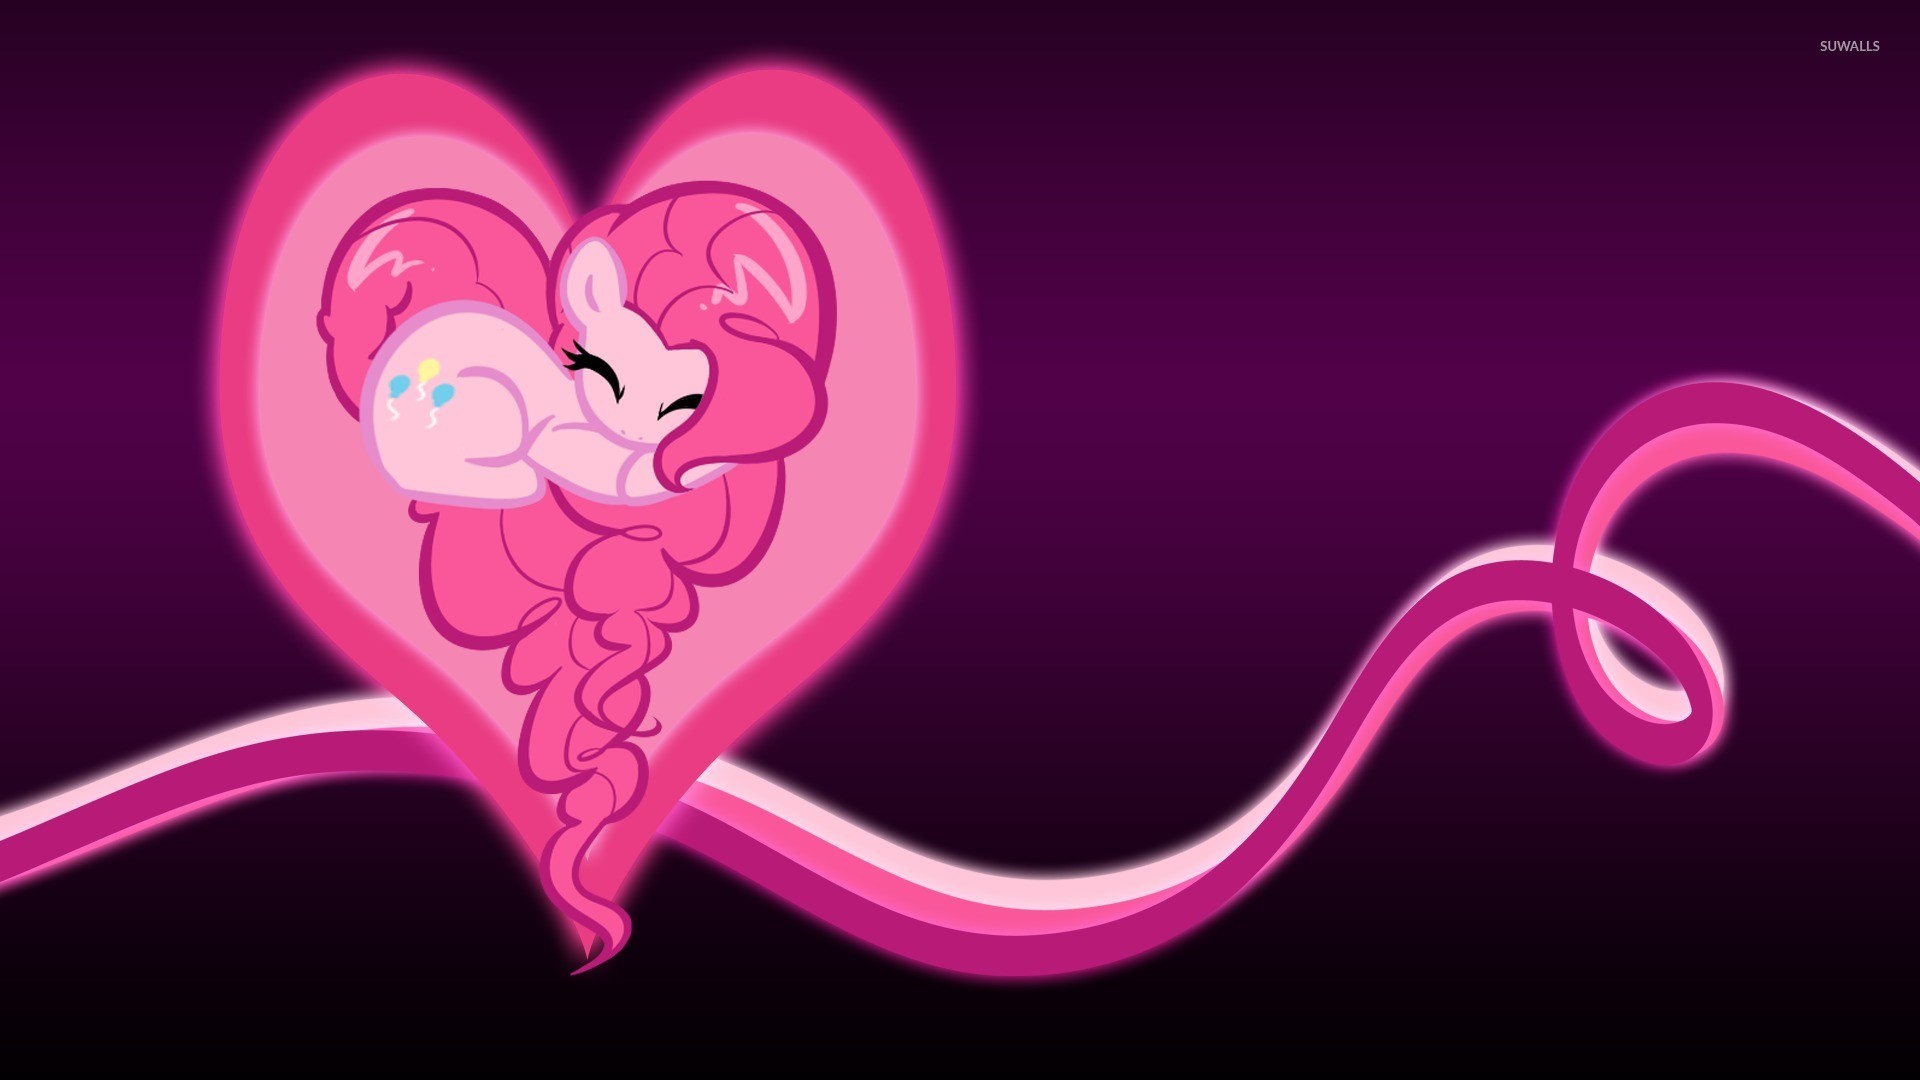 1920x1080 Pinkie Pie in a glowing heart - My Little Pony wallpaper  jpg